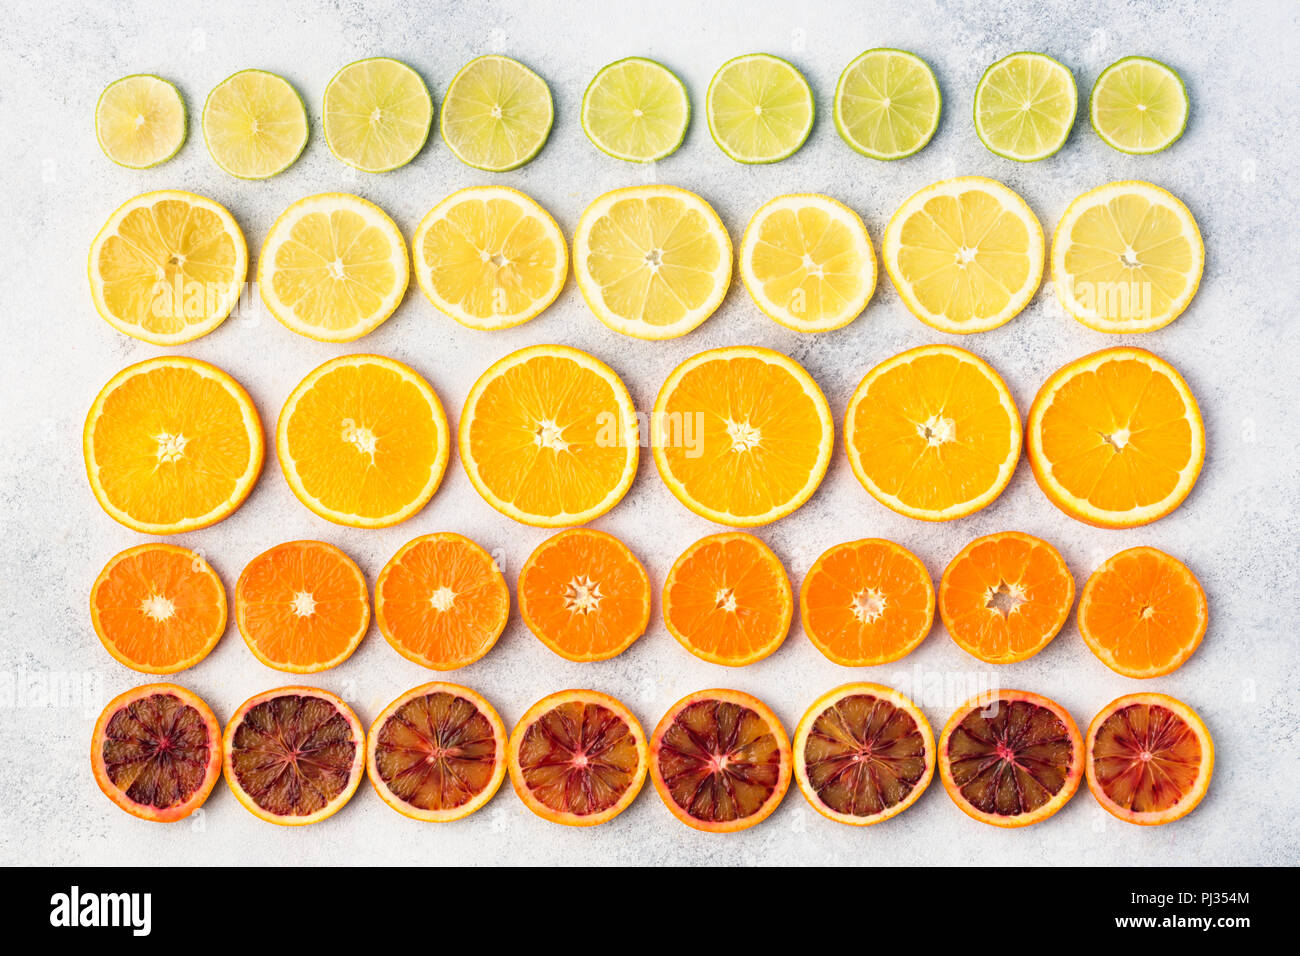 Agrumi ricchi di vitamina C, Arance, Limoni Limette Mandarini Satsuma disposti in righe. Sfondo colorato, vista dall'alto Foto Stock